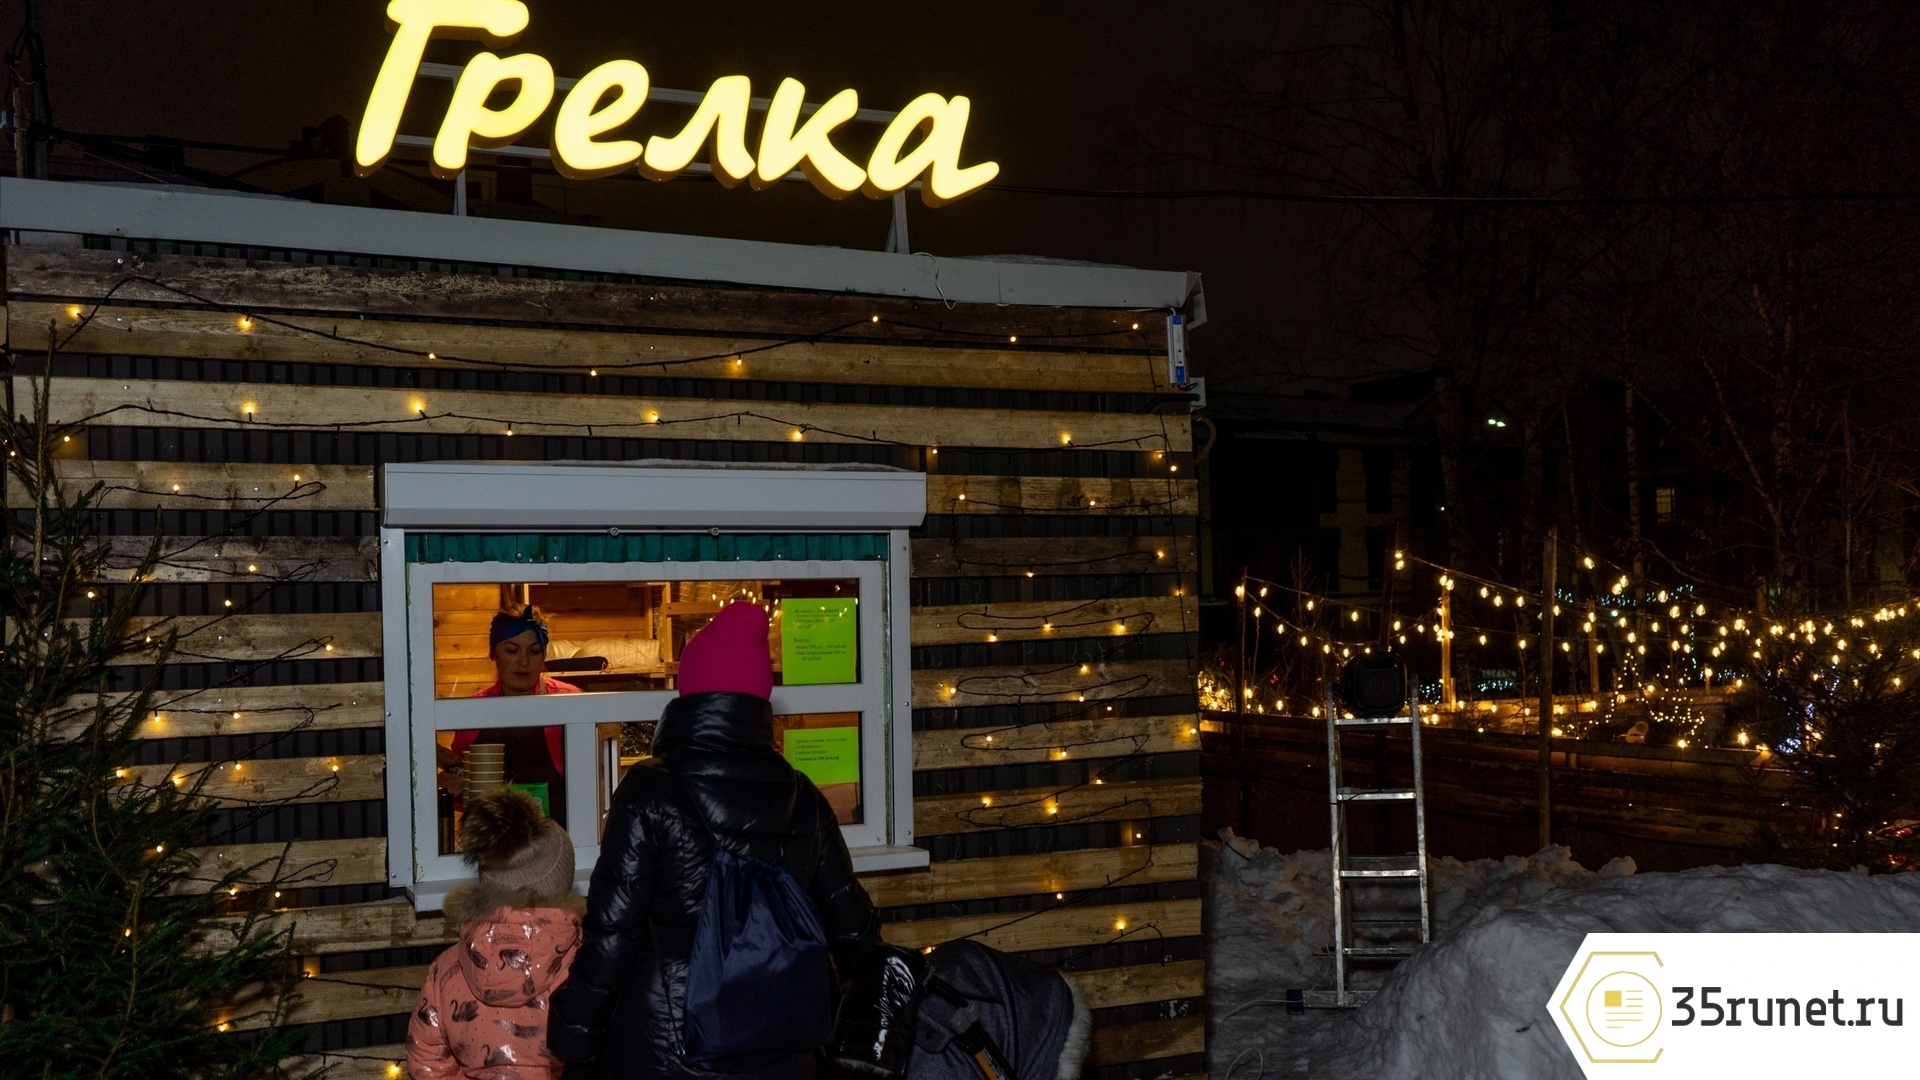 Десятки вологжан побывали на открытии нового общественного пространства «Грелка» в Вологде